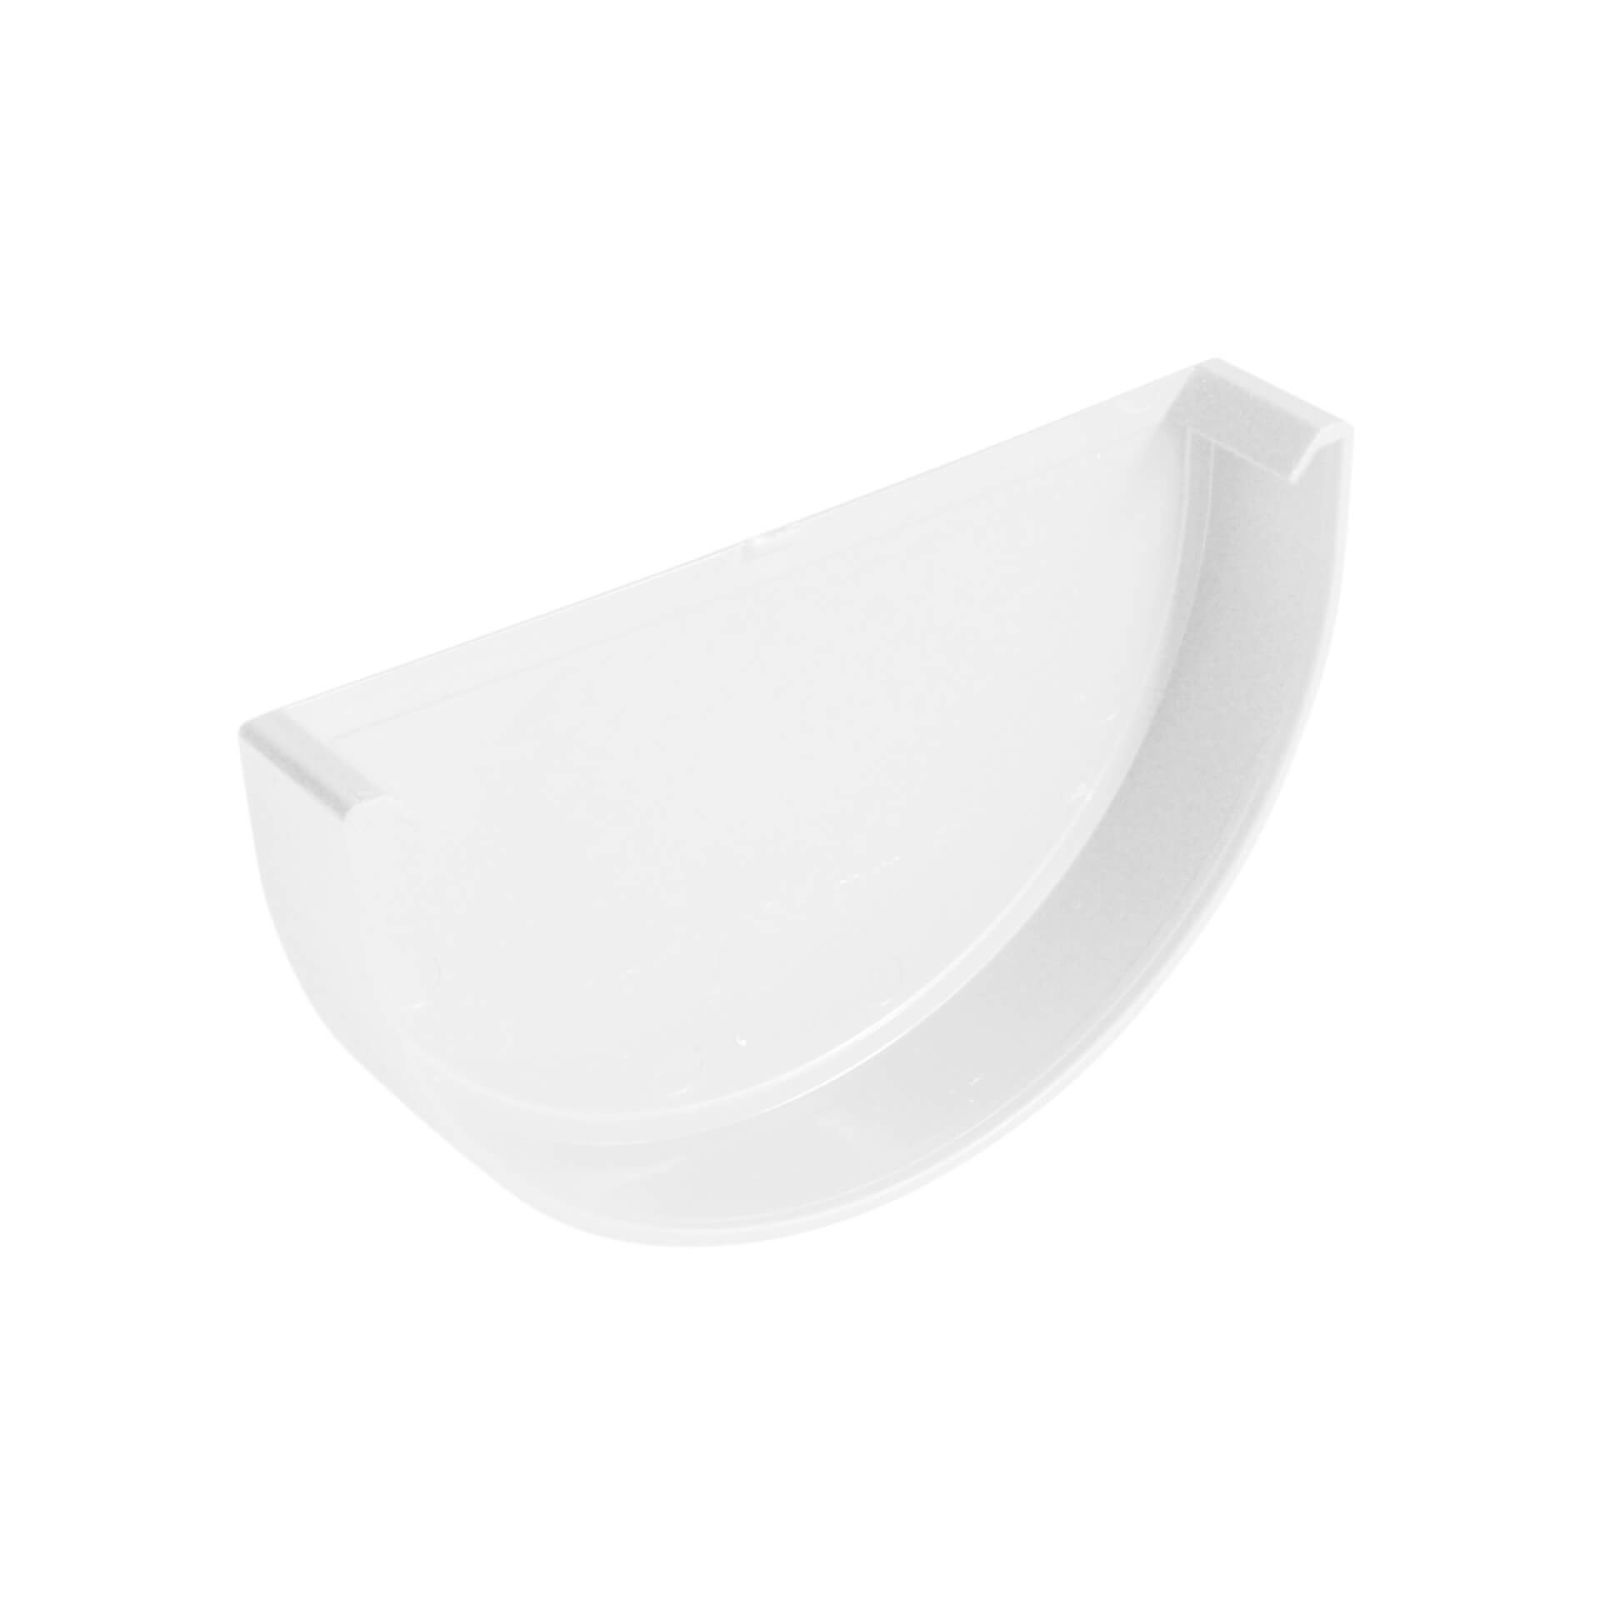 Kunststoff Dachrinnen Sparpaket 6 m | Ø 150/110 mm | Farbe Weiß #3